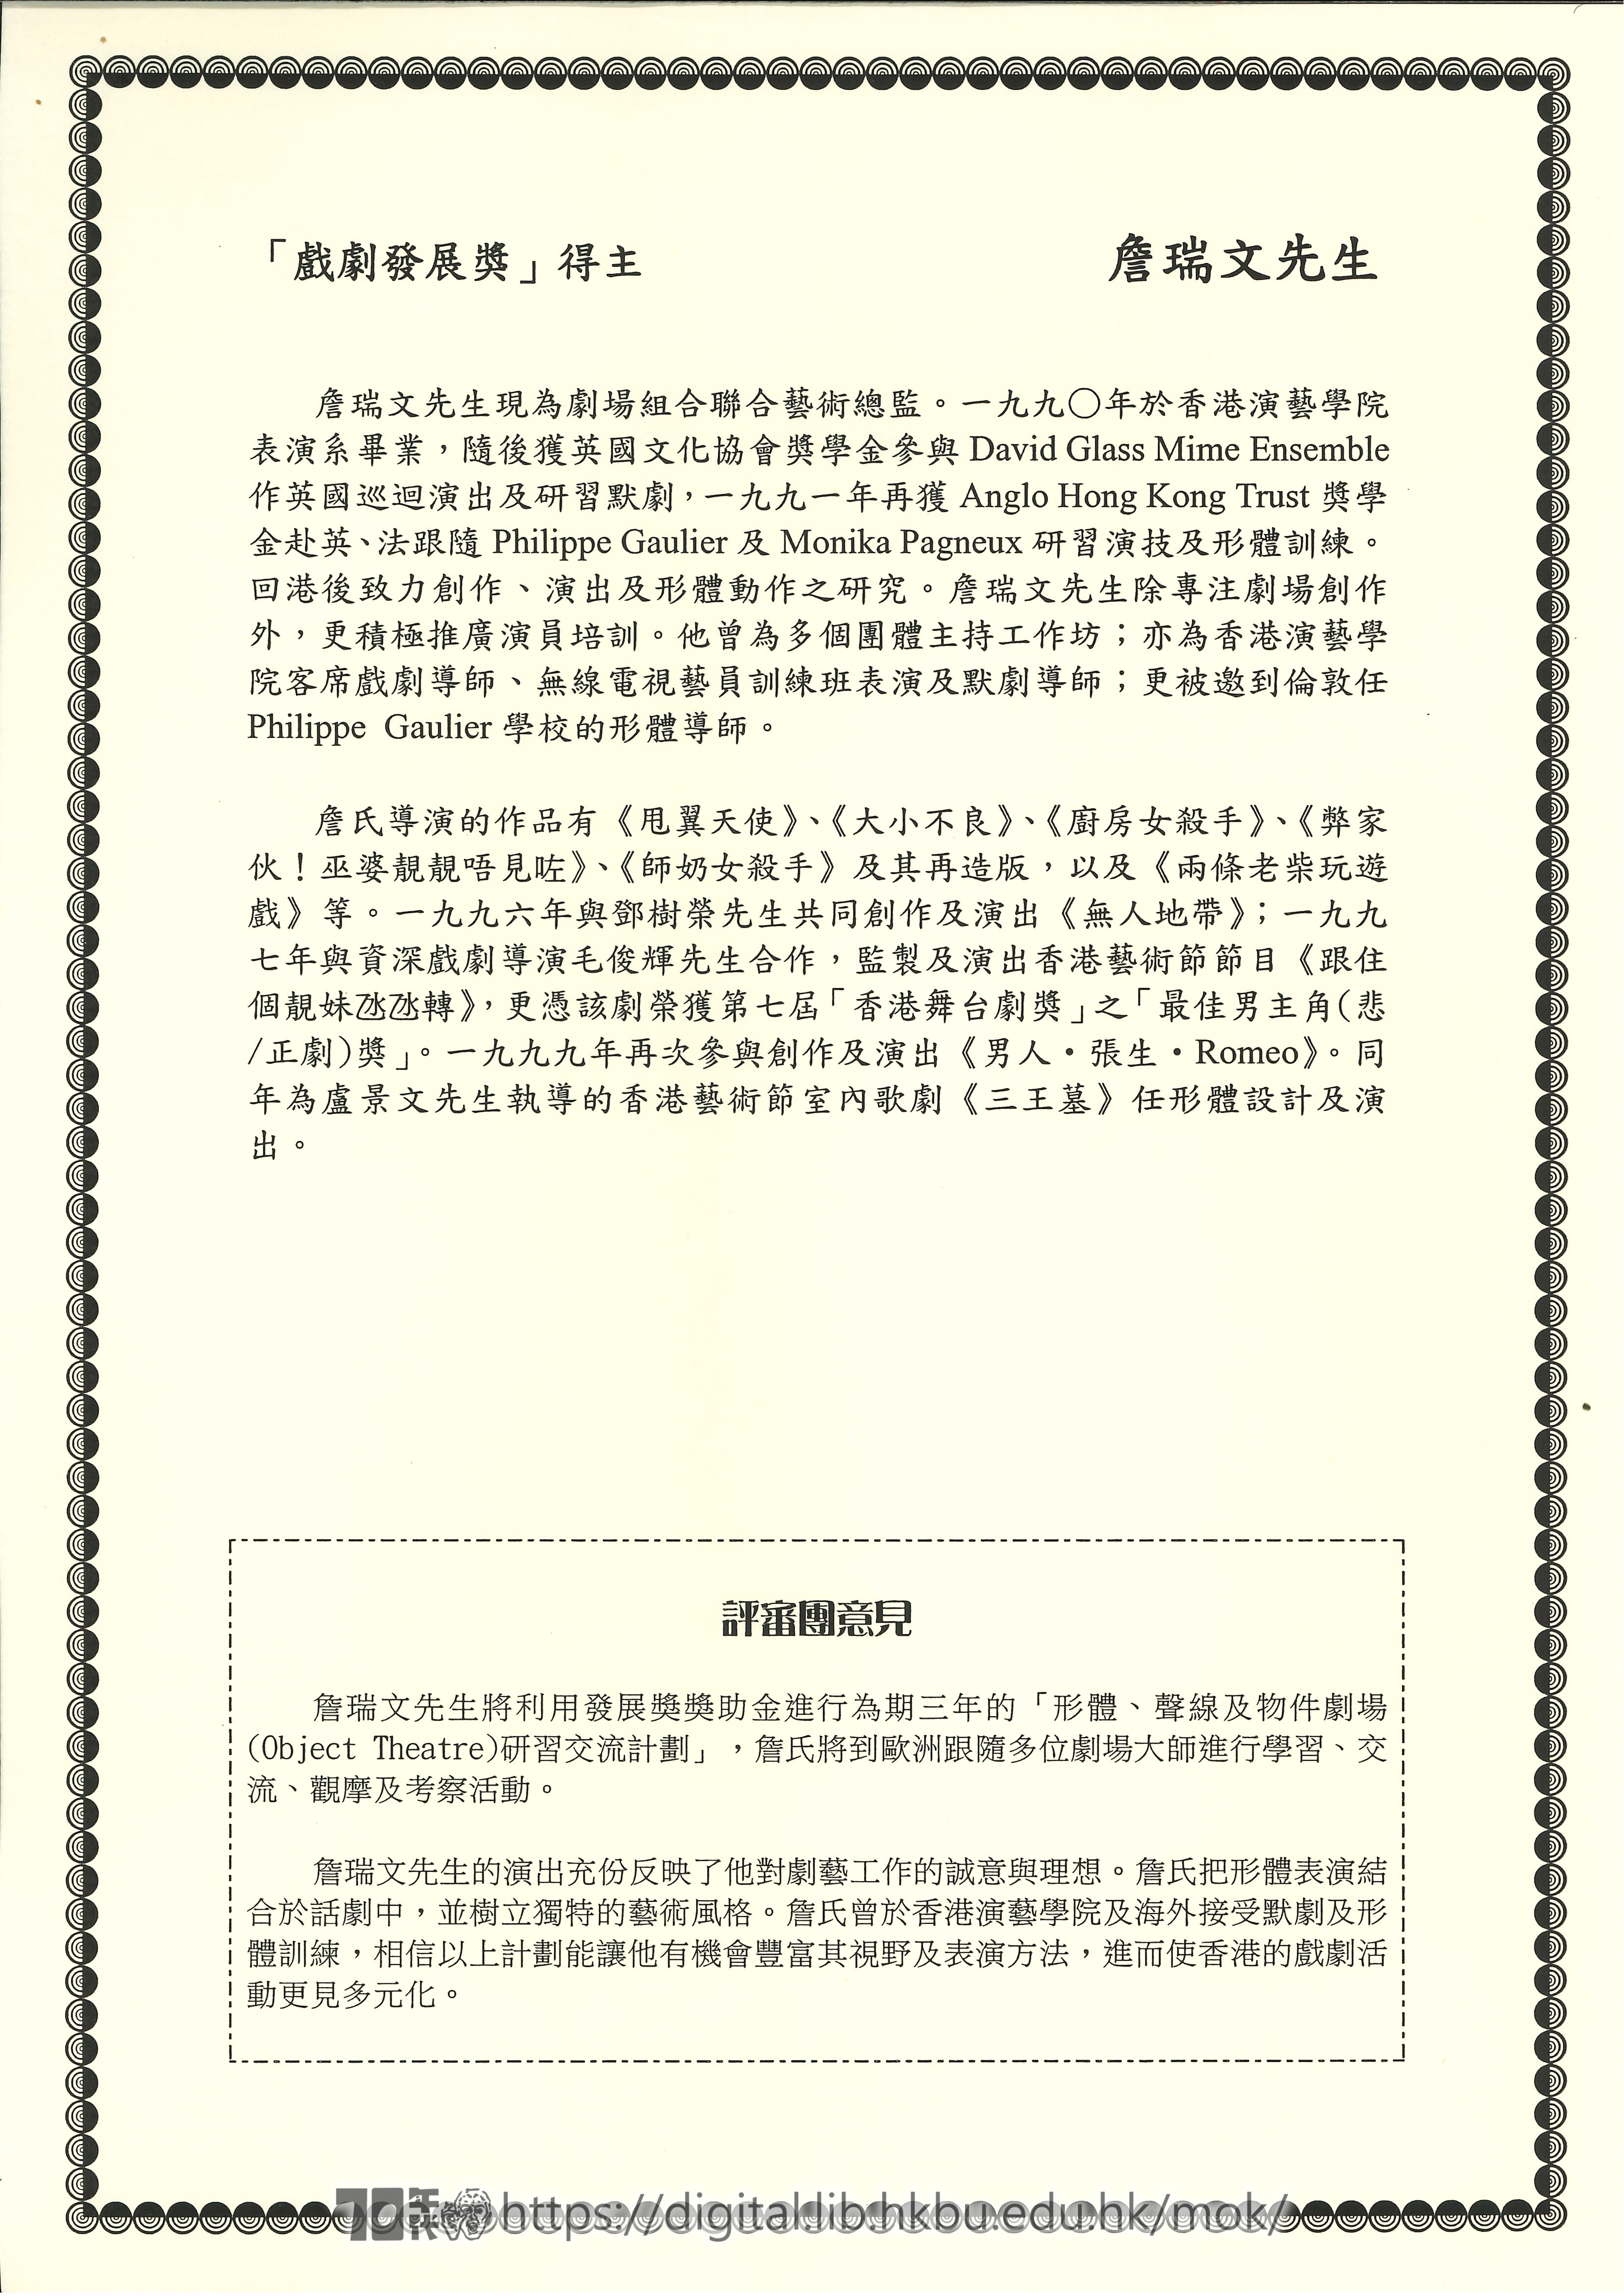   香港藝術發展局一九九九二〇〇〇年度戲劇及戲曲獎助計劃頒獎典禮手冊  